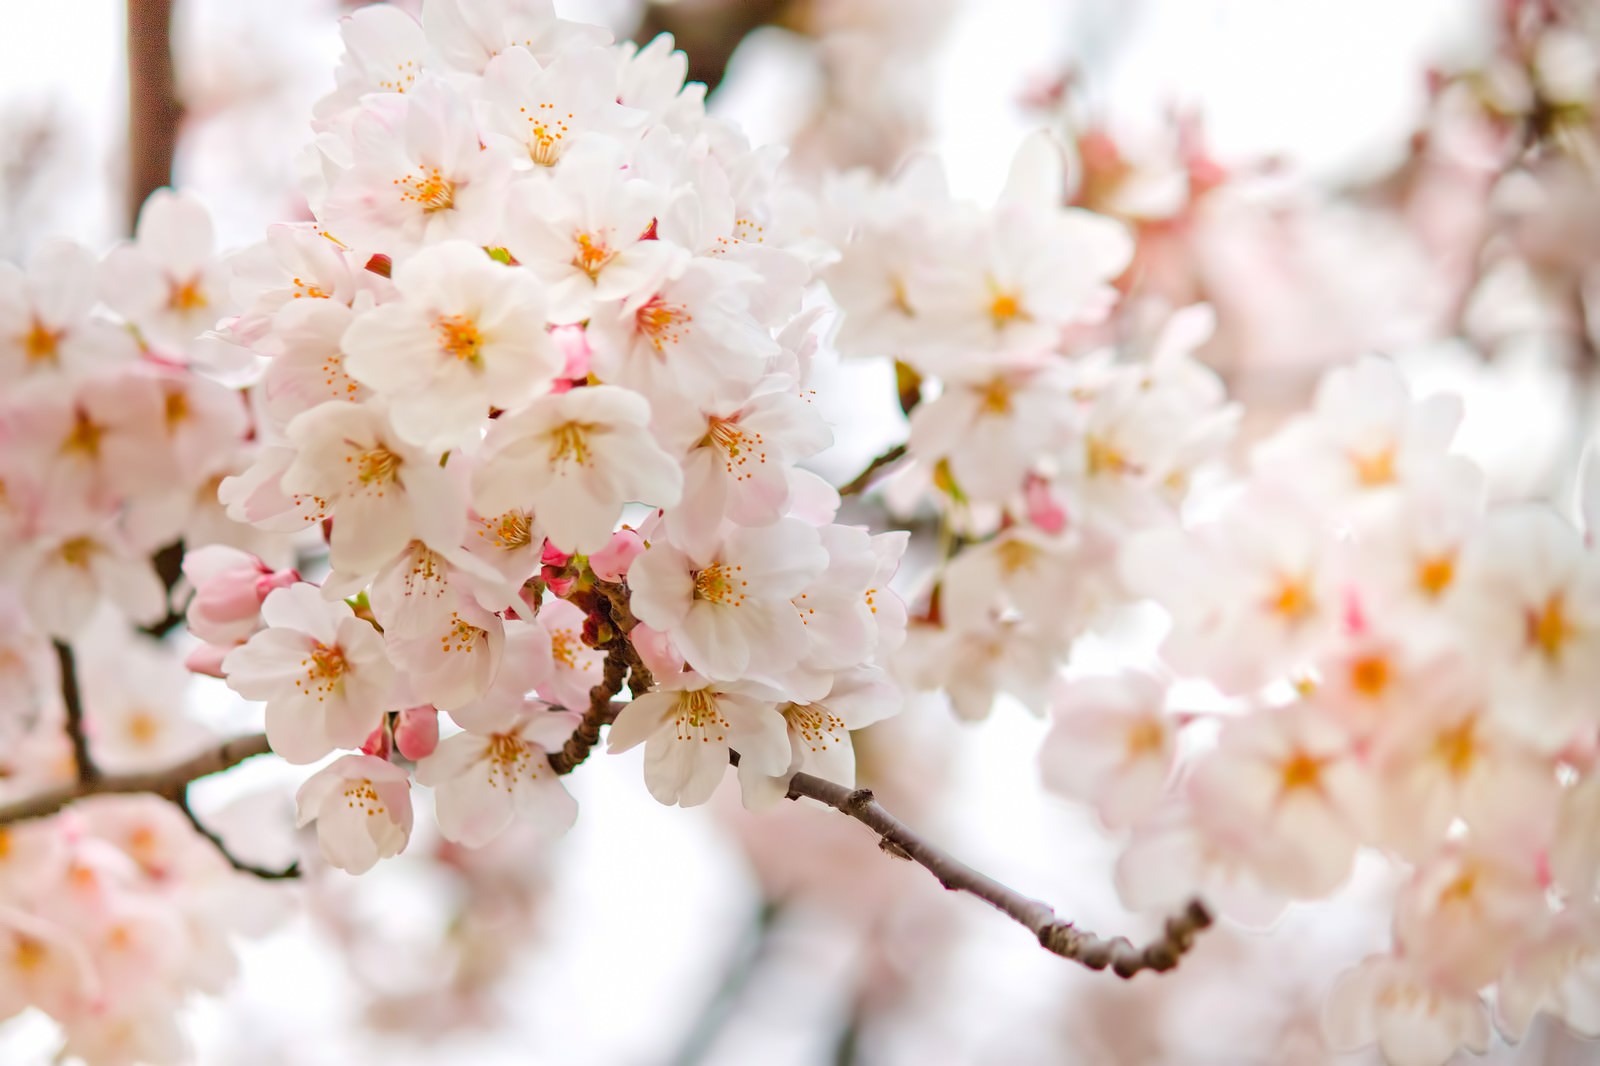 「満開に近づく桜の花 | フリー素材のぱくたそ」の写真